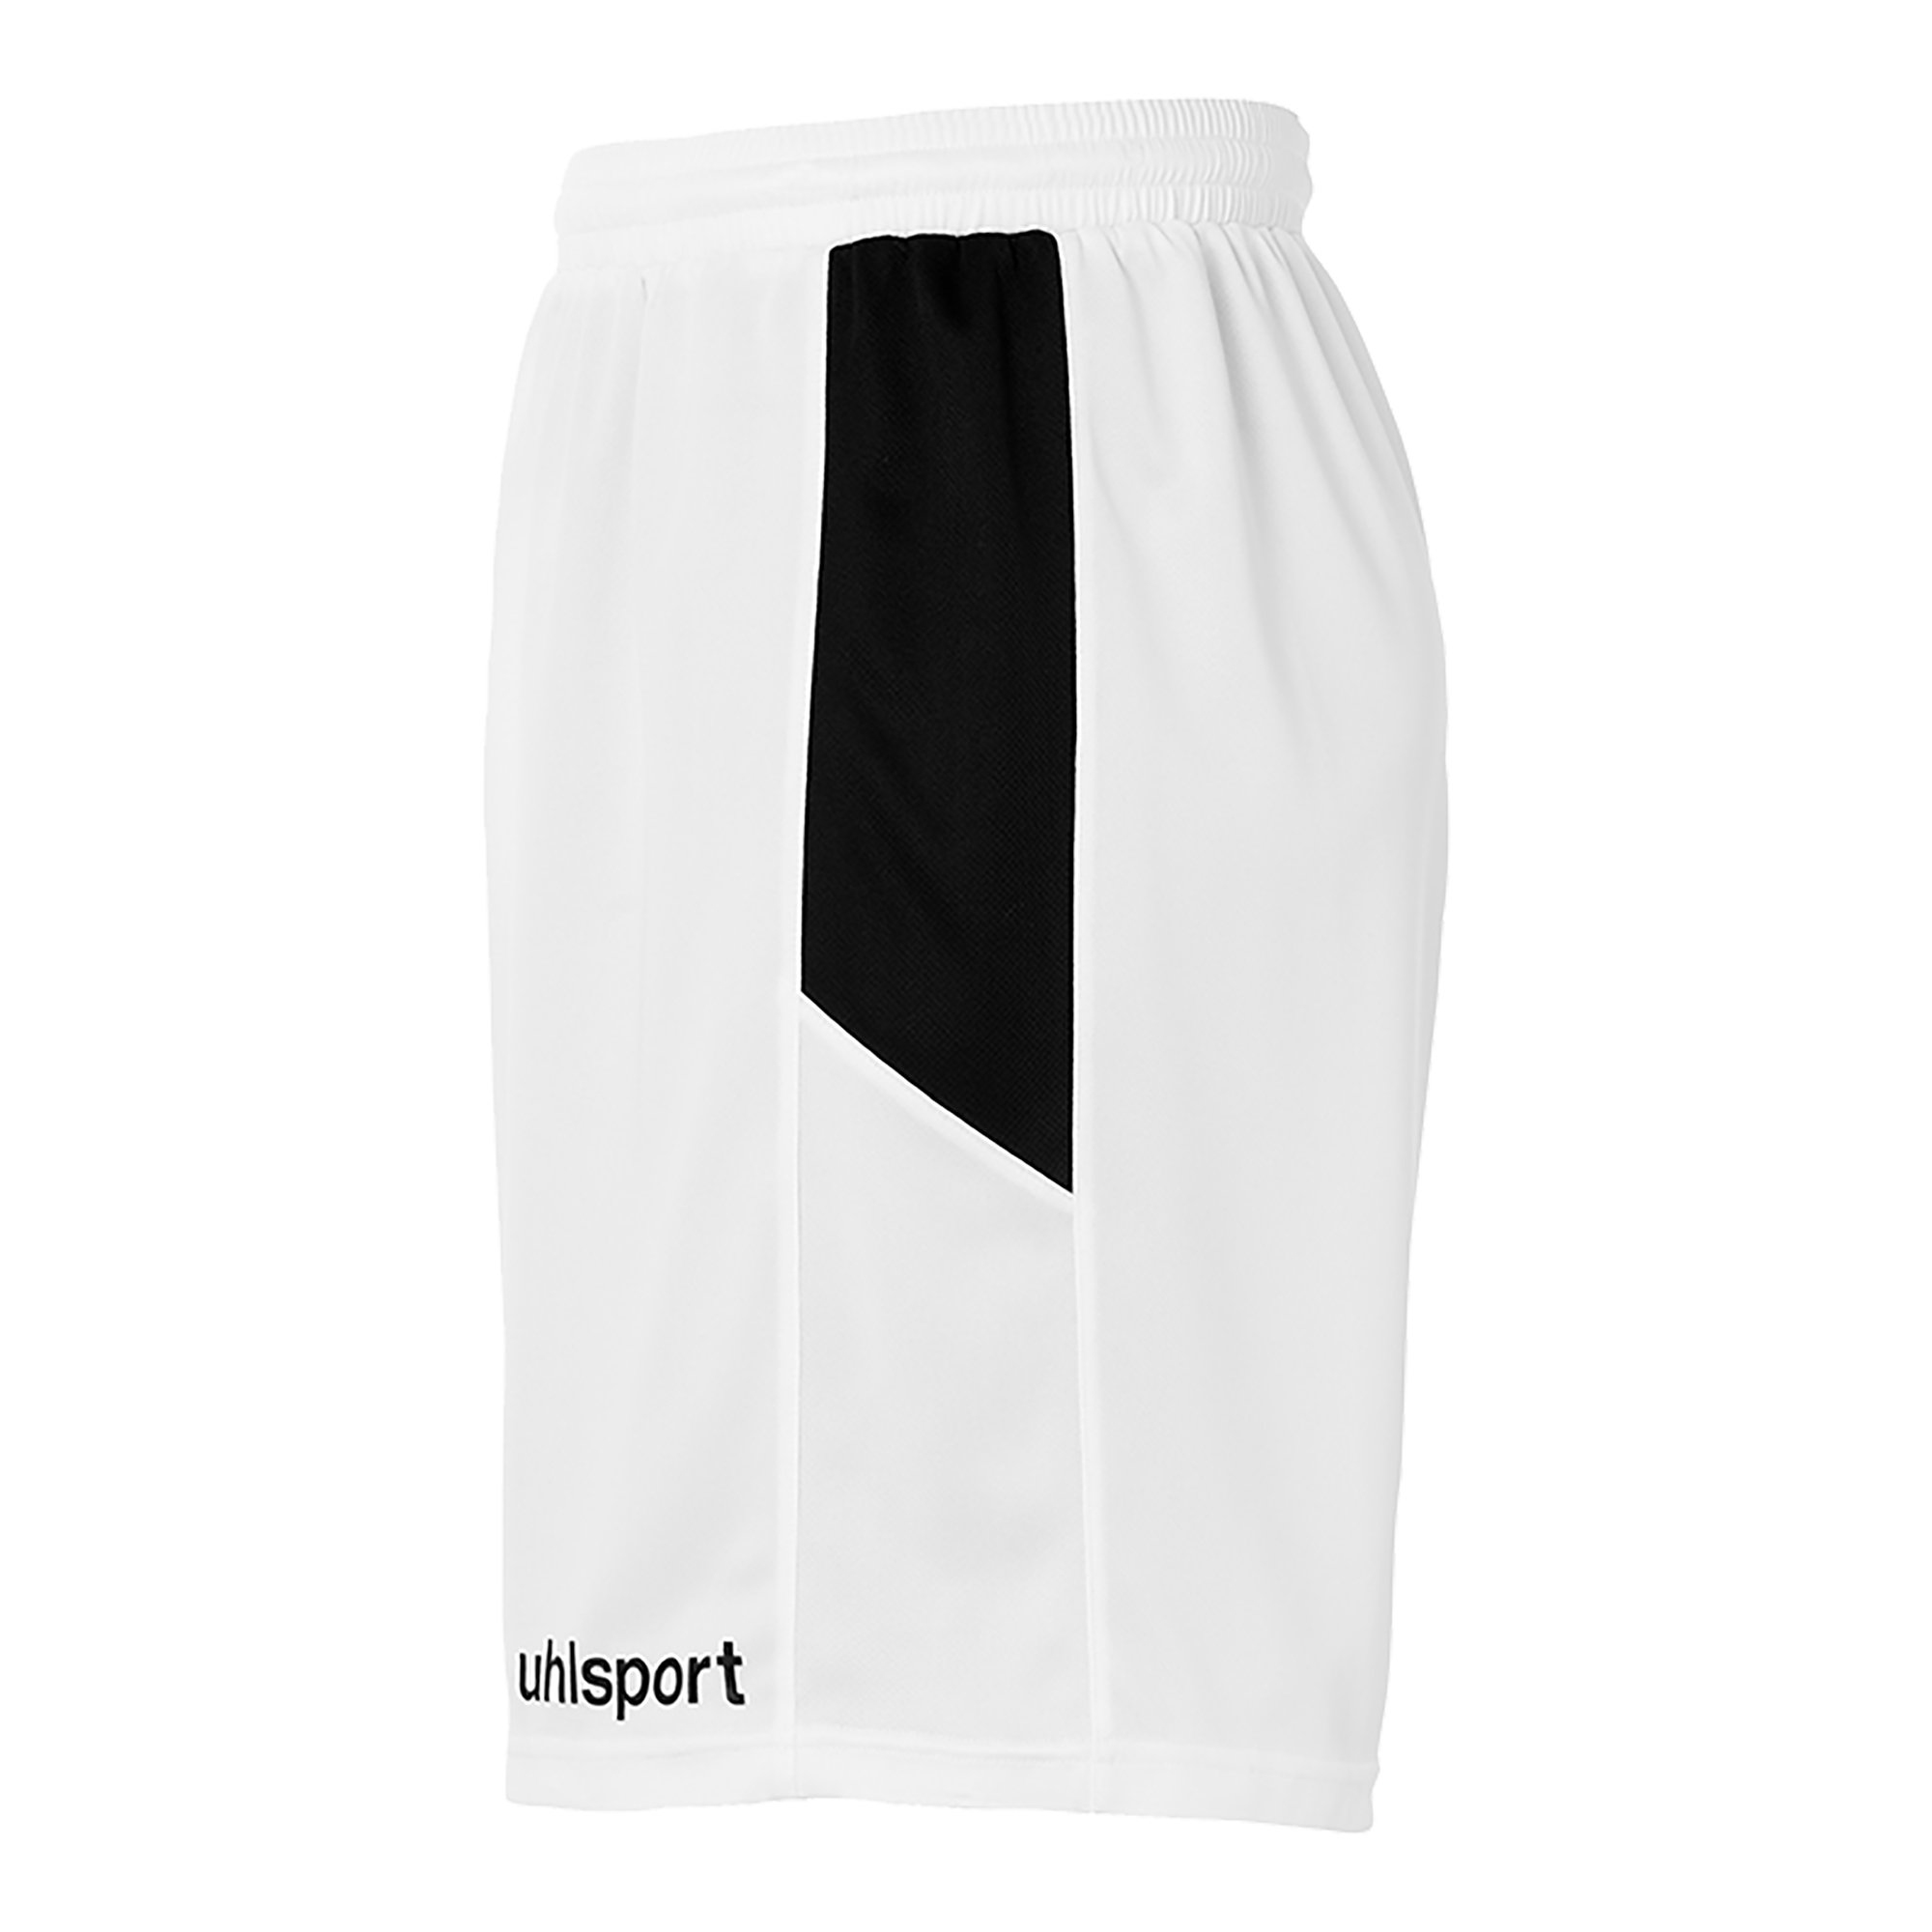 Uhlsport Goal Shorts